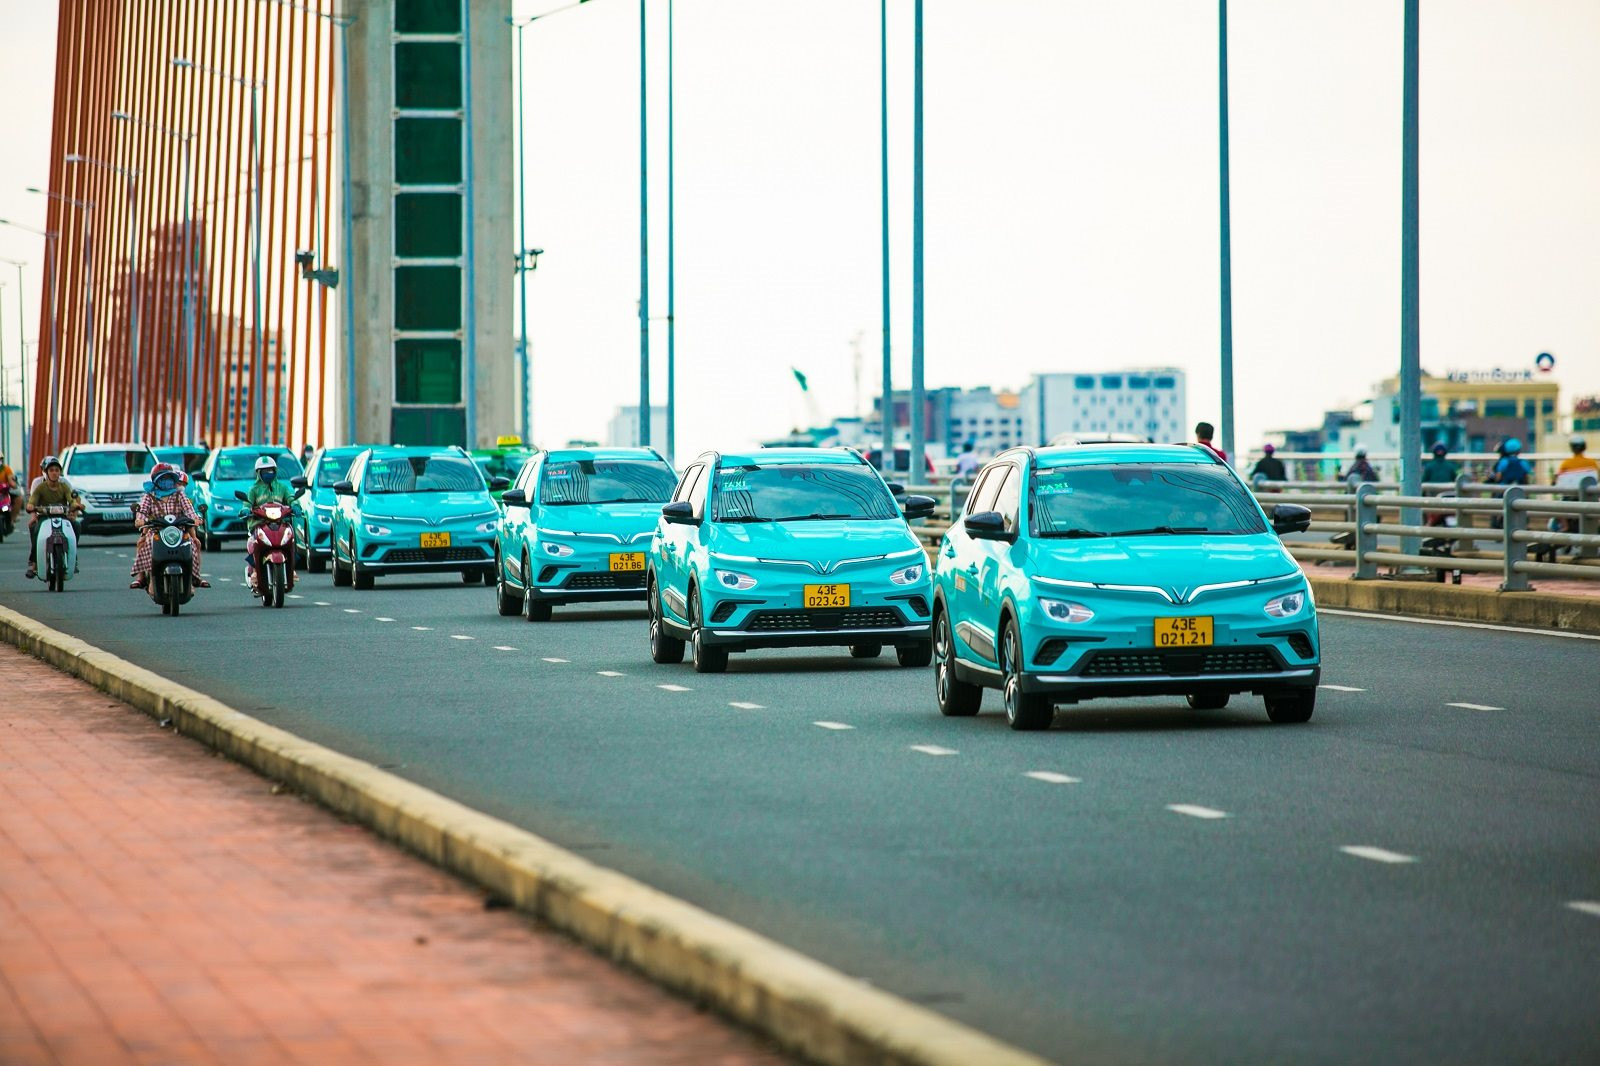 Hãng taxi của tỷ phú Phạm Nhật Vượng cán mốc 1 triệu chuyến đi chỉ sau 10 tuần, muốn &quot;phủ xanh&quot; 27 tỉnh thành ngay trong năm 2023 - Ảnh 1.